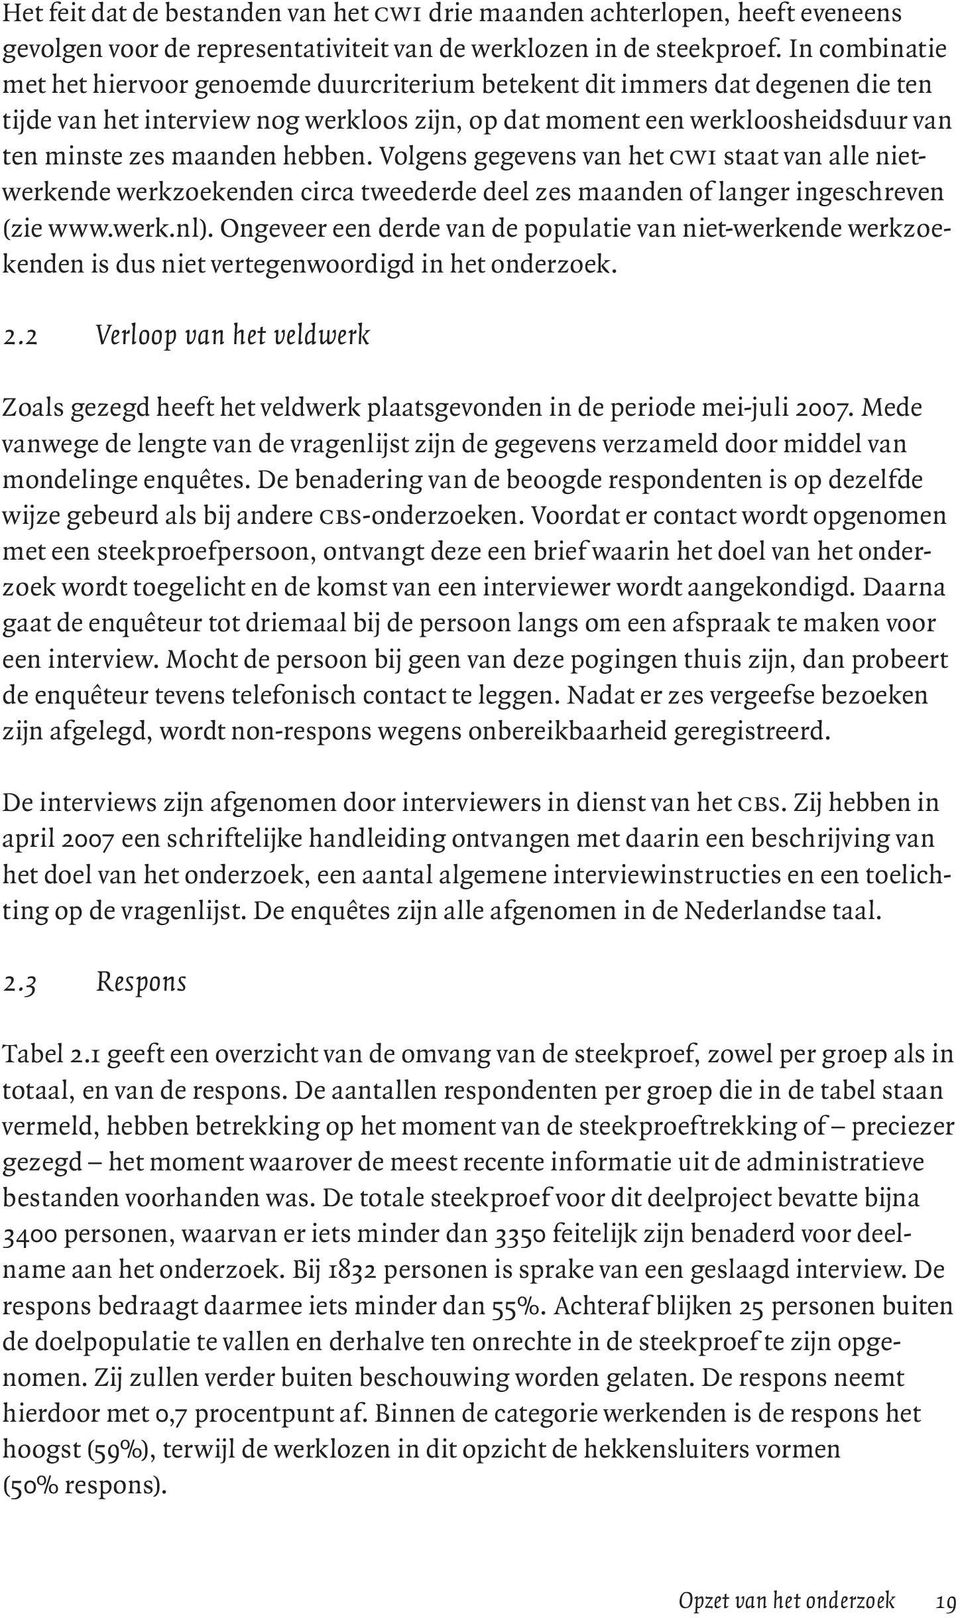 hebben. Volgens gegevens van het cwi staat van alle nietwerkende werkzoekenden circa tweederde deel zes maanden of langer ingeschreven (zie www.werk.nl).